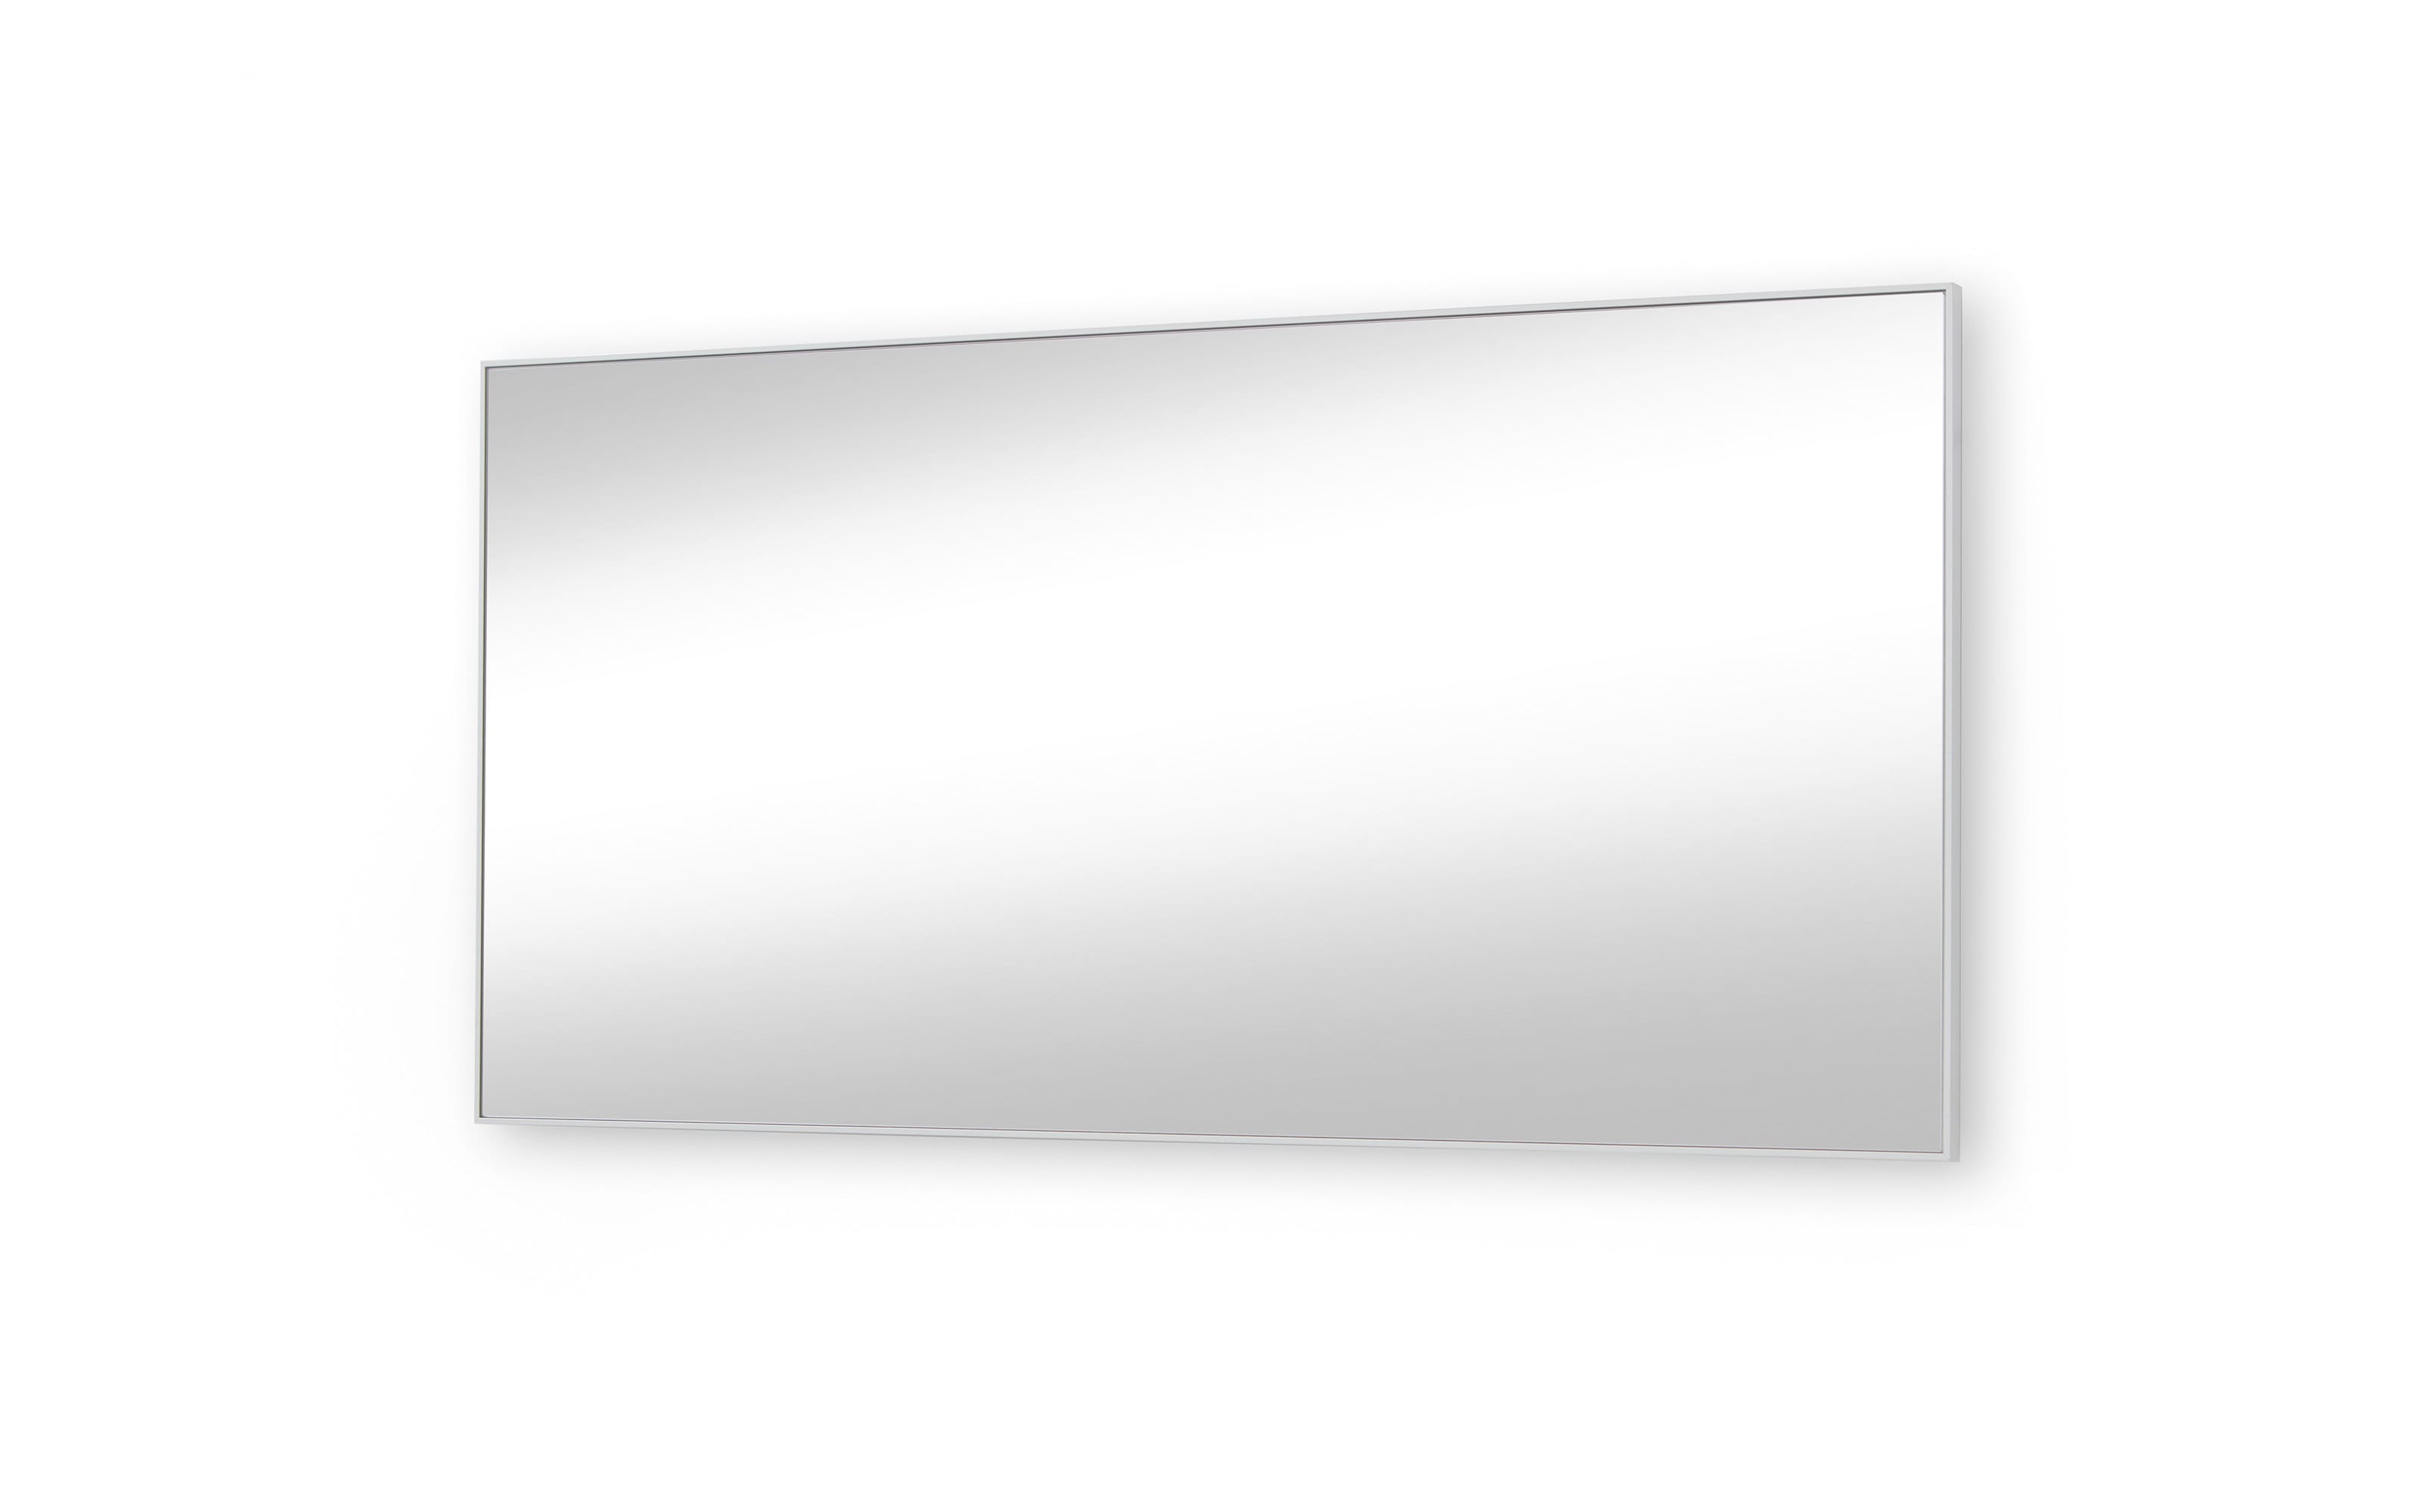 Spiegel 237 Vortina, alufarbig, 158 x 77 cm